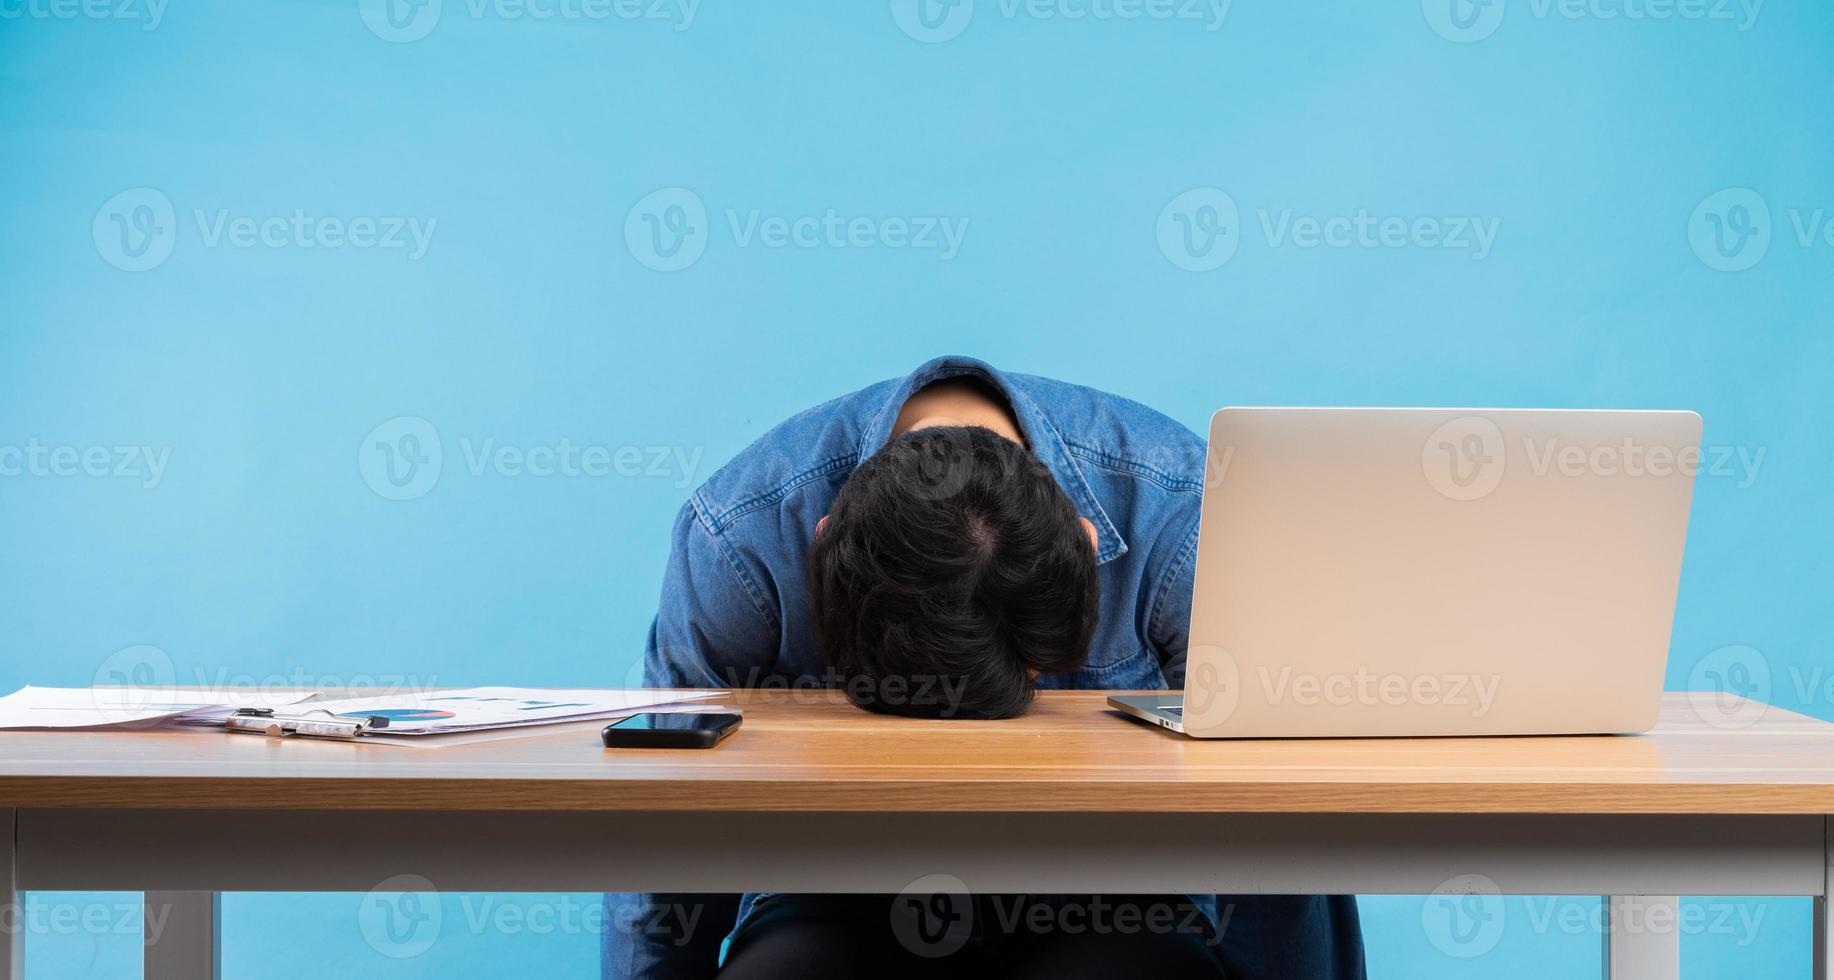 un homme d'affaires asiatique a laissé tomber sa tête sur la table à cause de la pression au travail photo